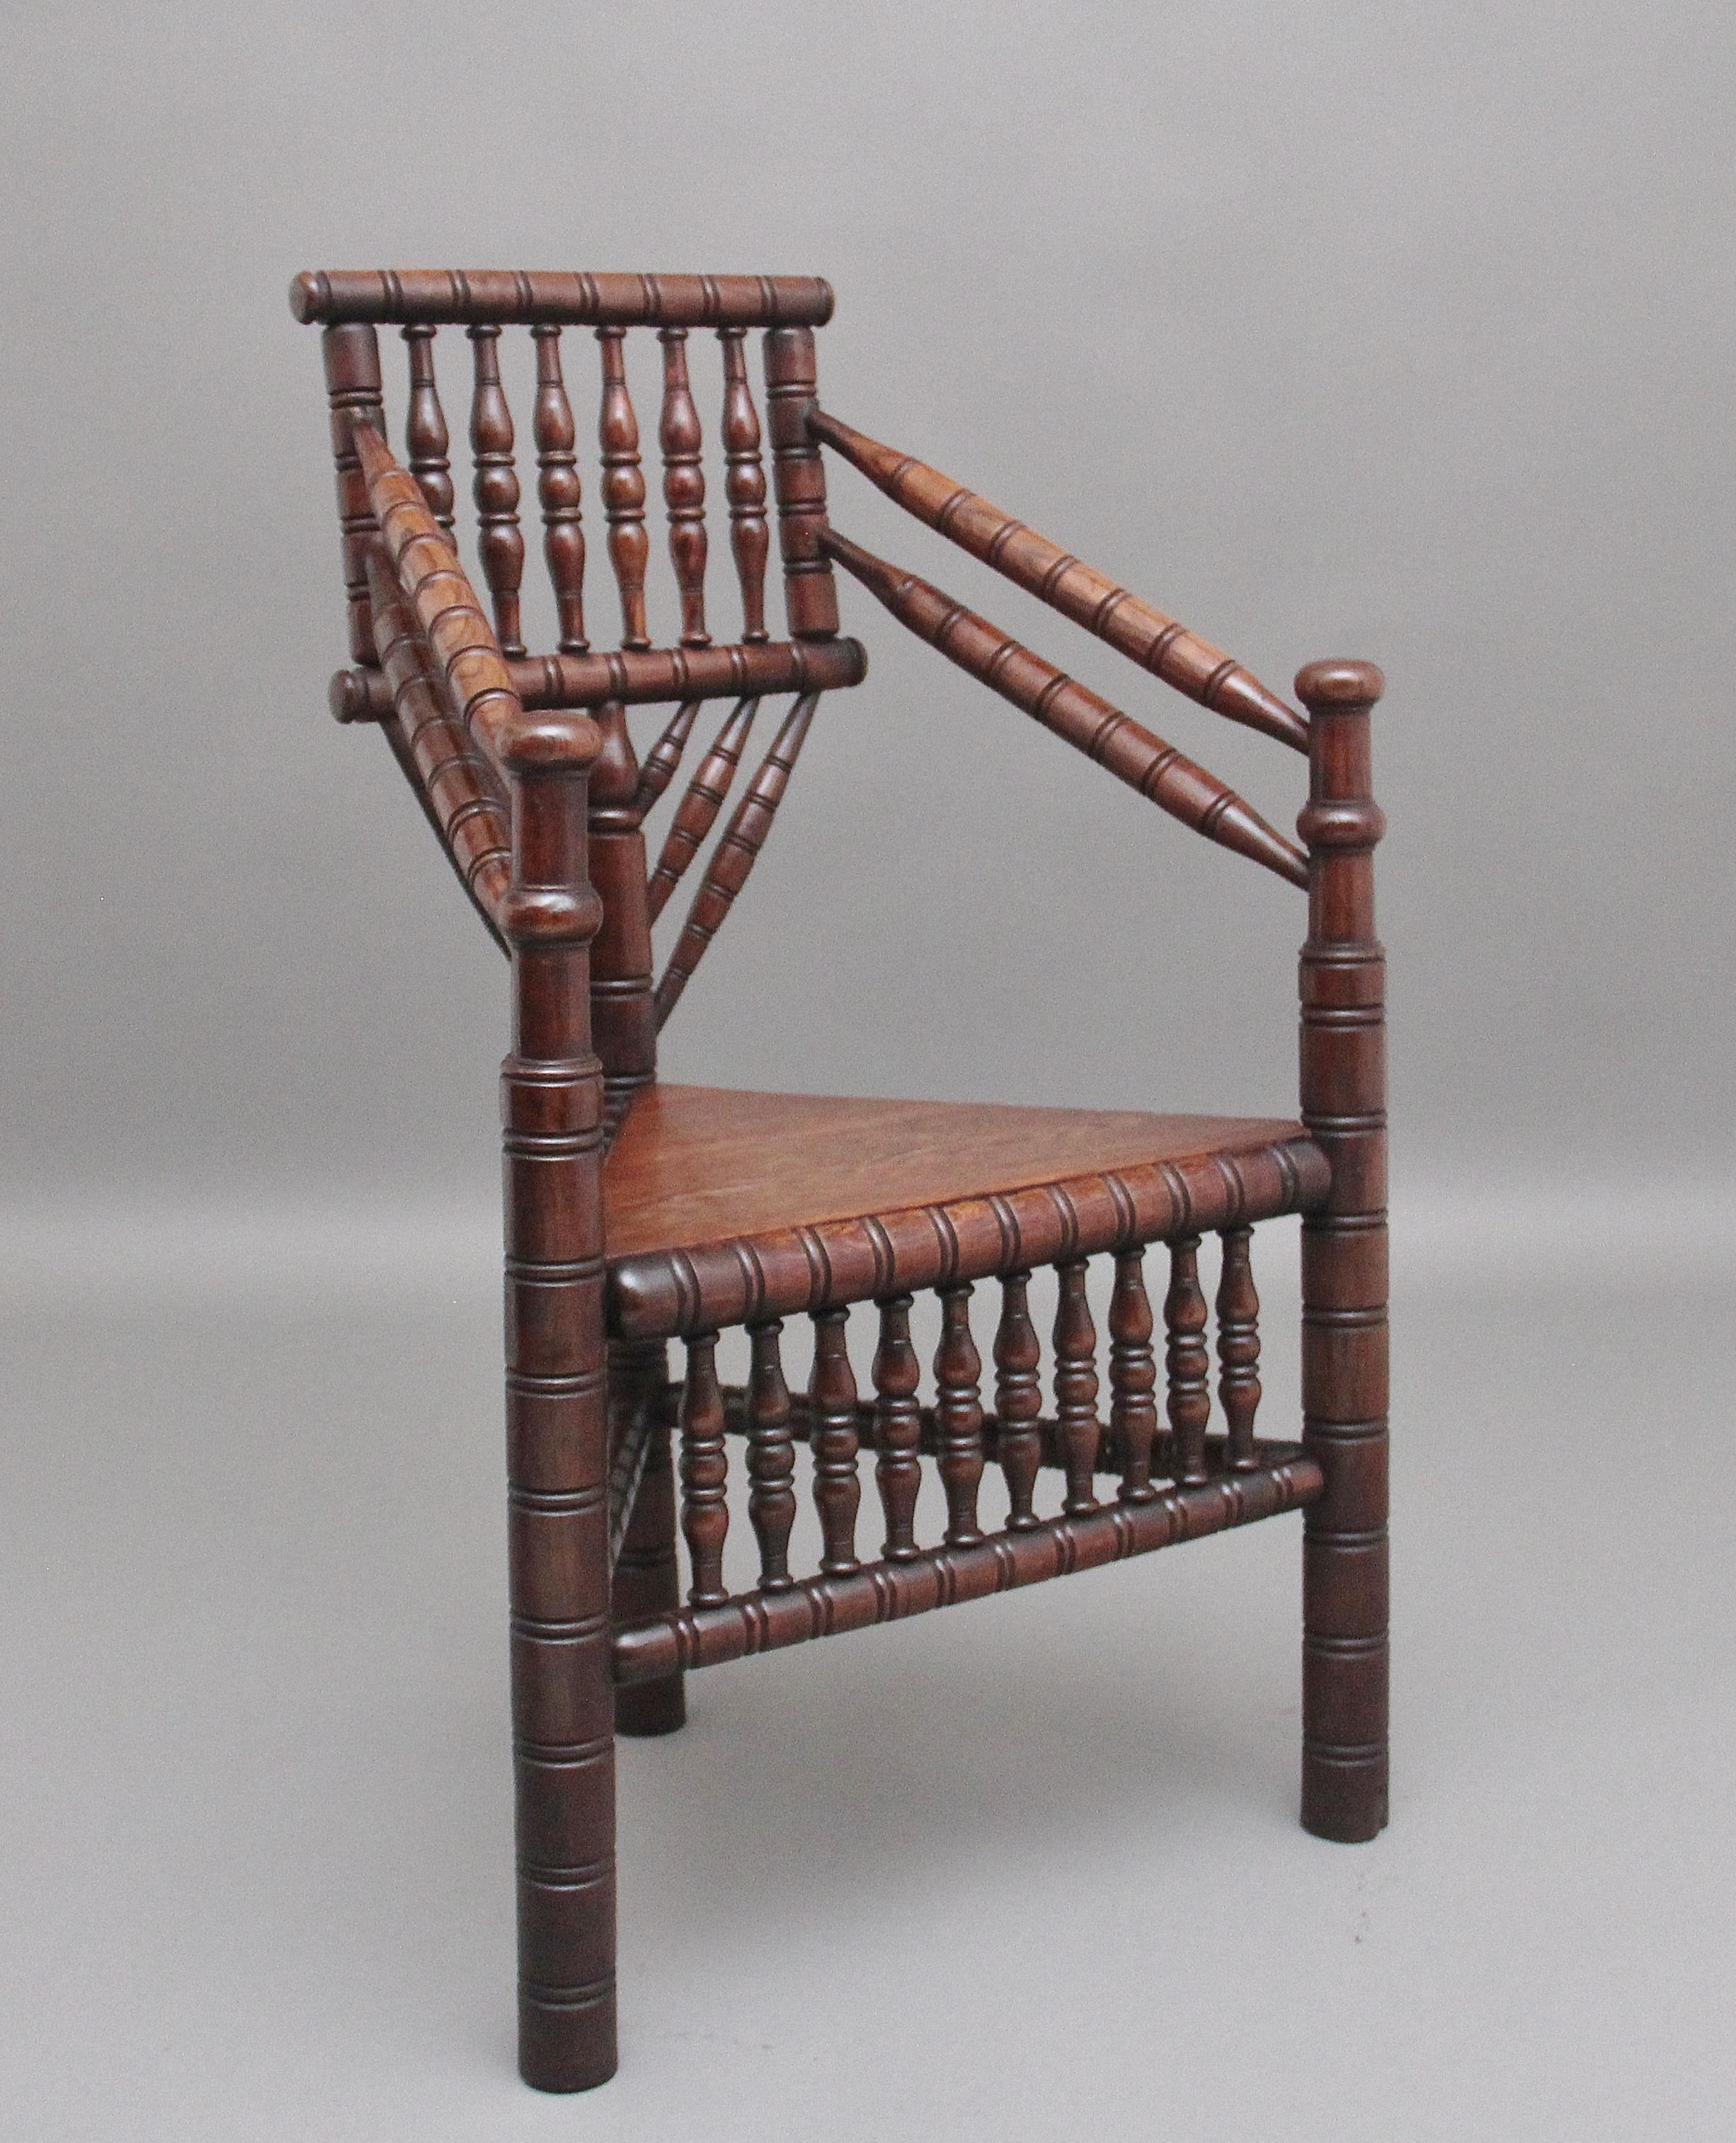 Chaise en chêne du 19e siècle de belle qualité et très décorative, à haut dossier avec accoudoirs tournés en angle, reposant sur trois pieds tournés réunis par des brancards tournés, assise triangulaire en bois, divers fuseaux décoratifs sur